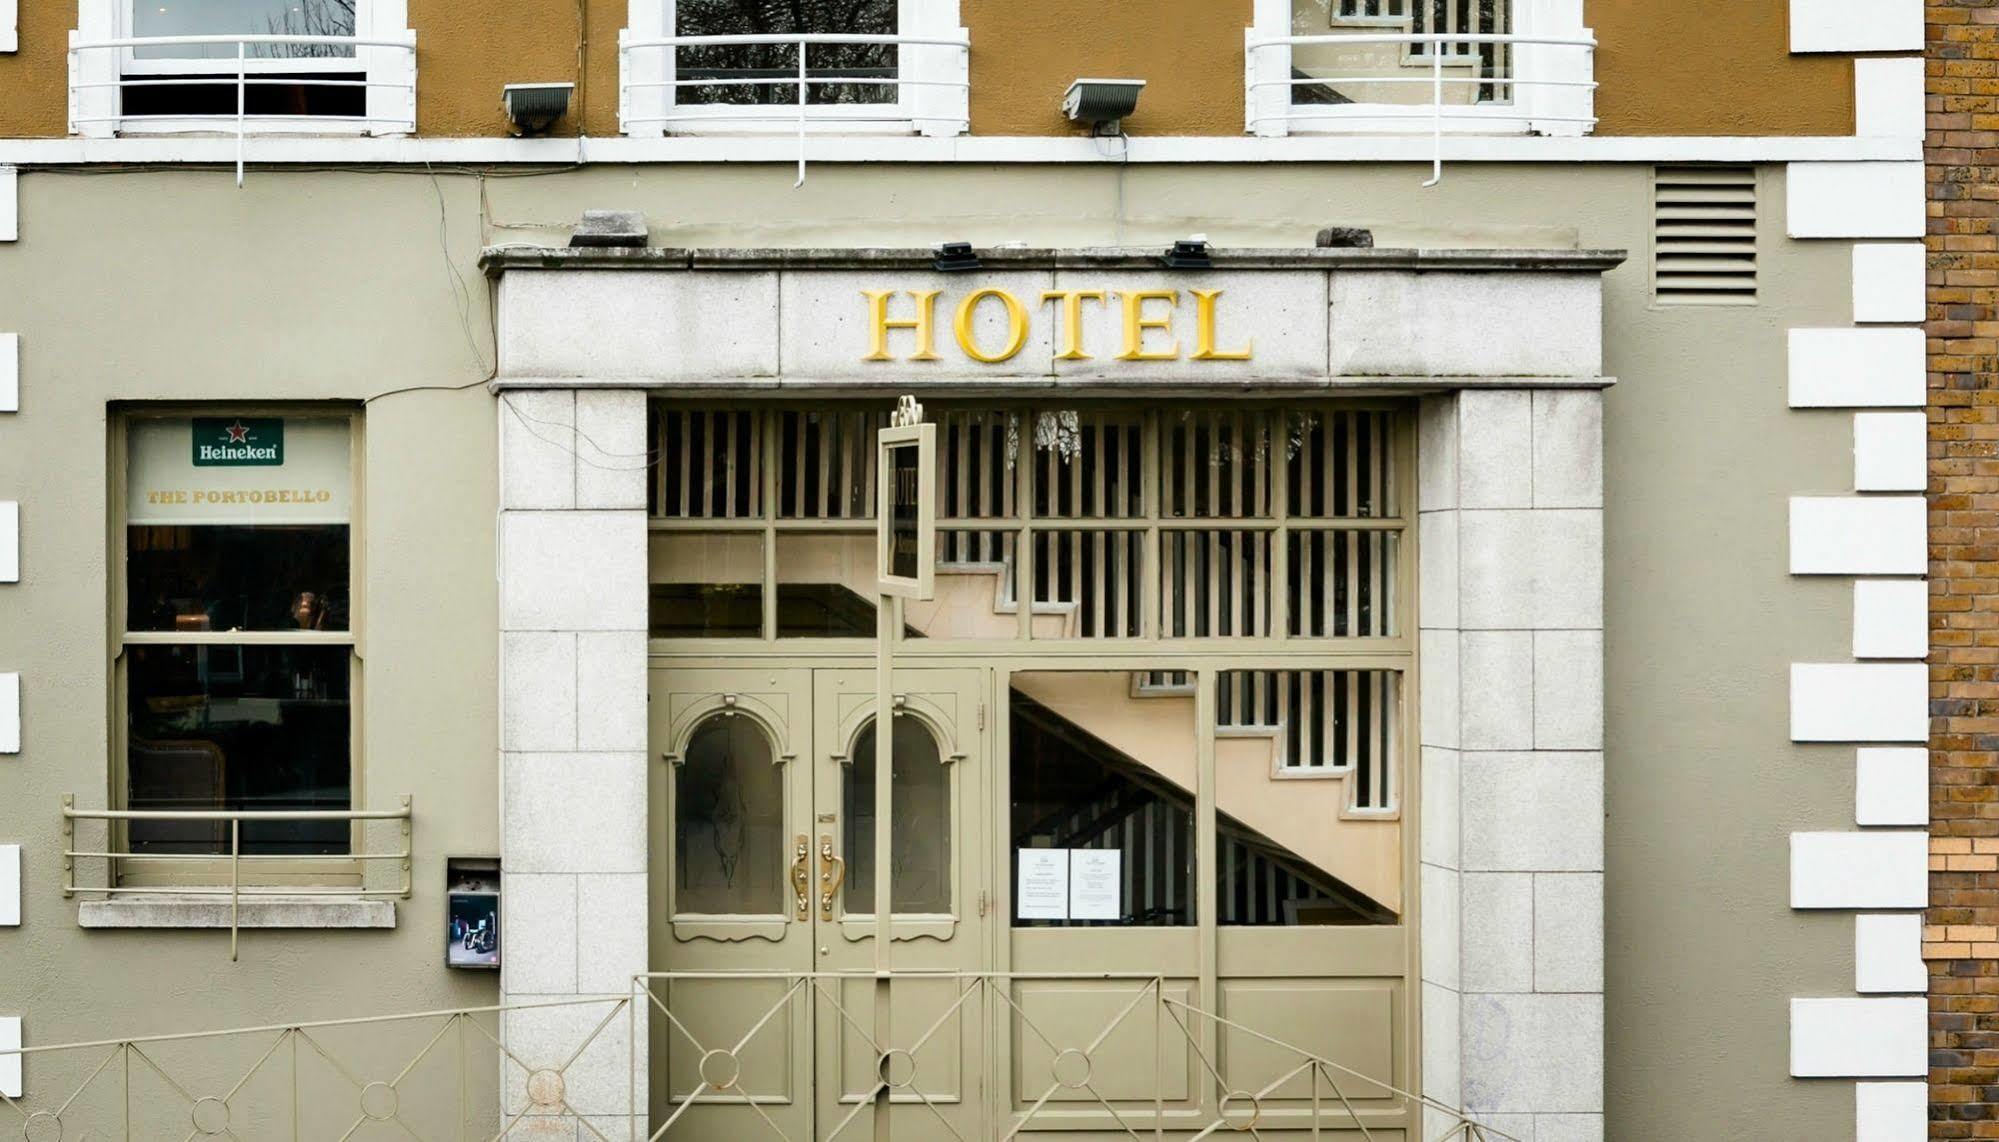 Portobello Hotel Dublin Exterior photo